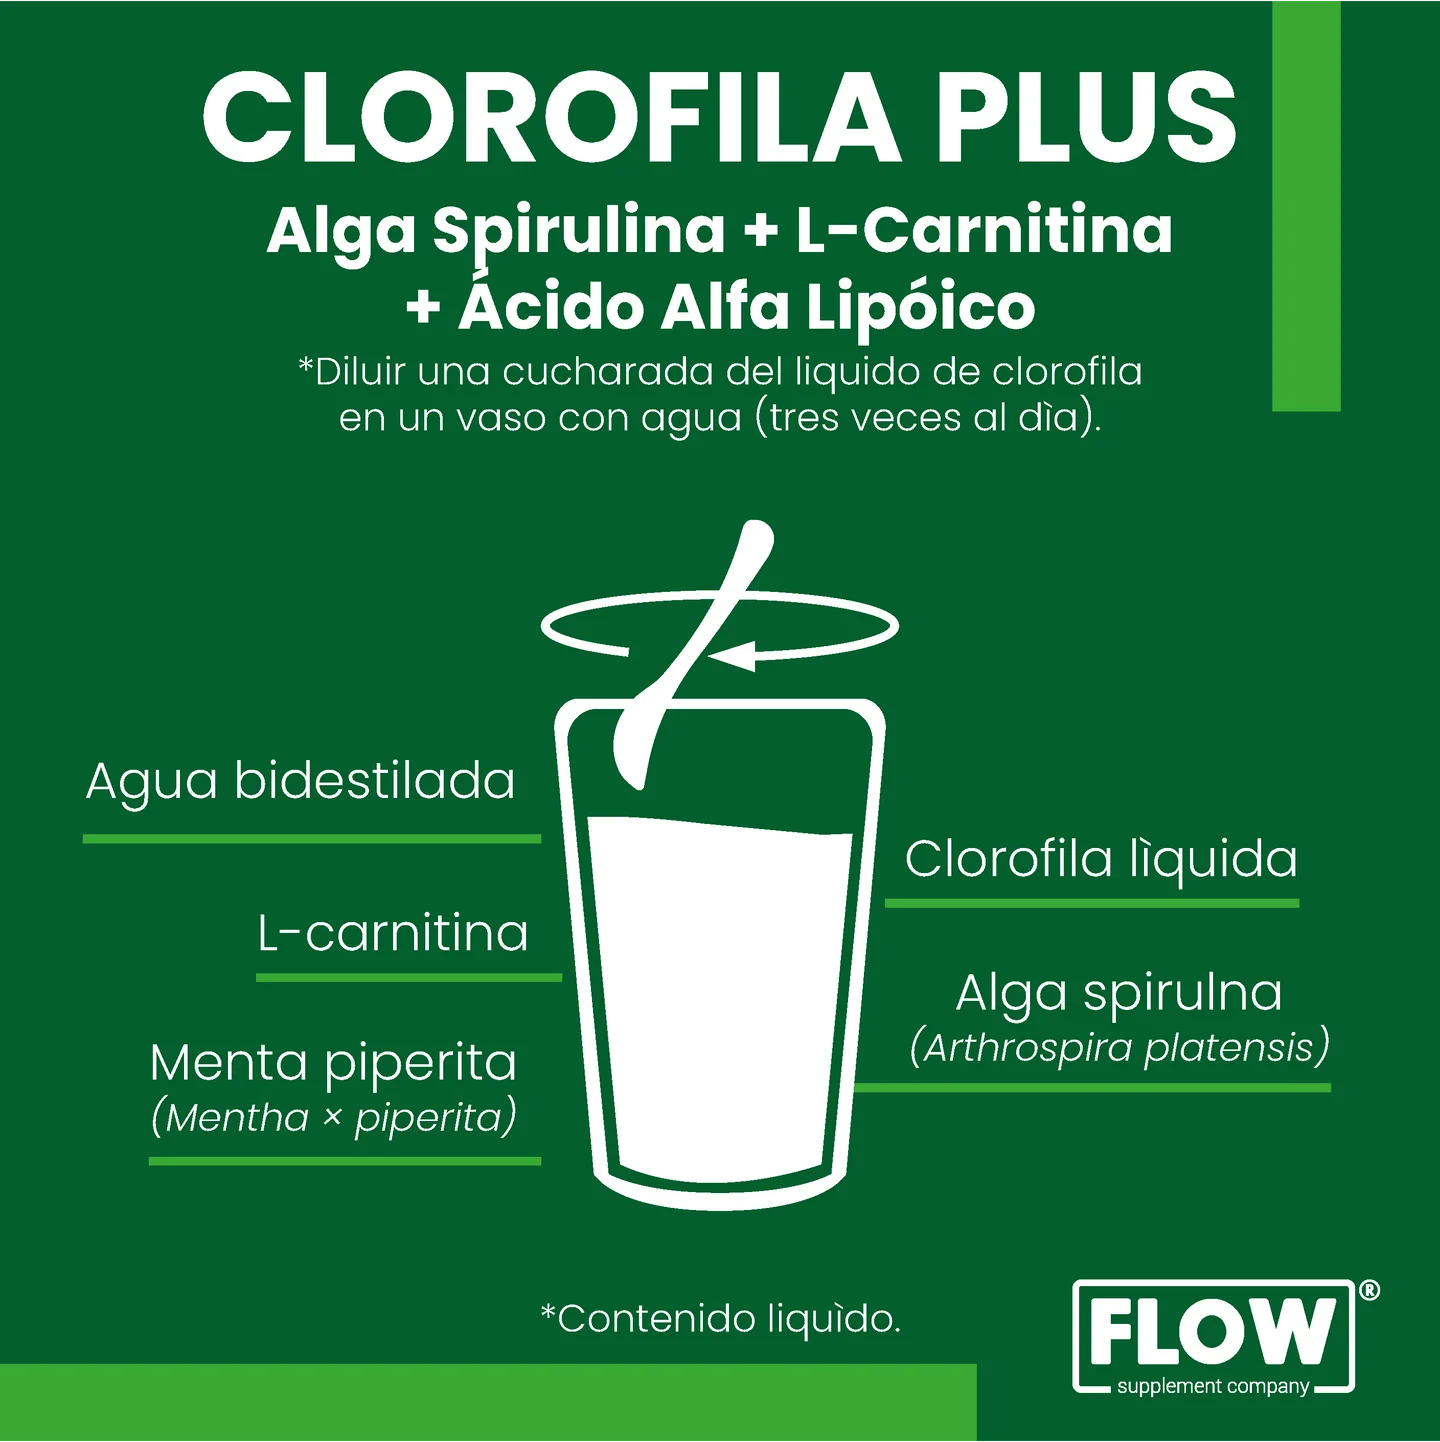 Flow- Clorofila plus